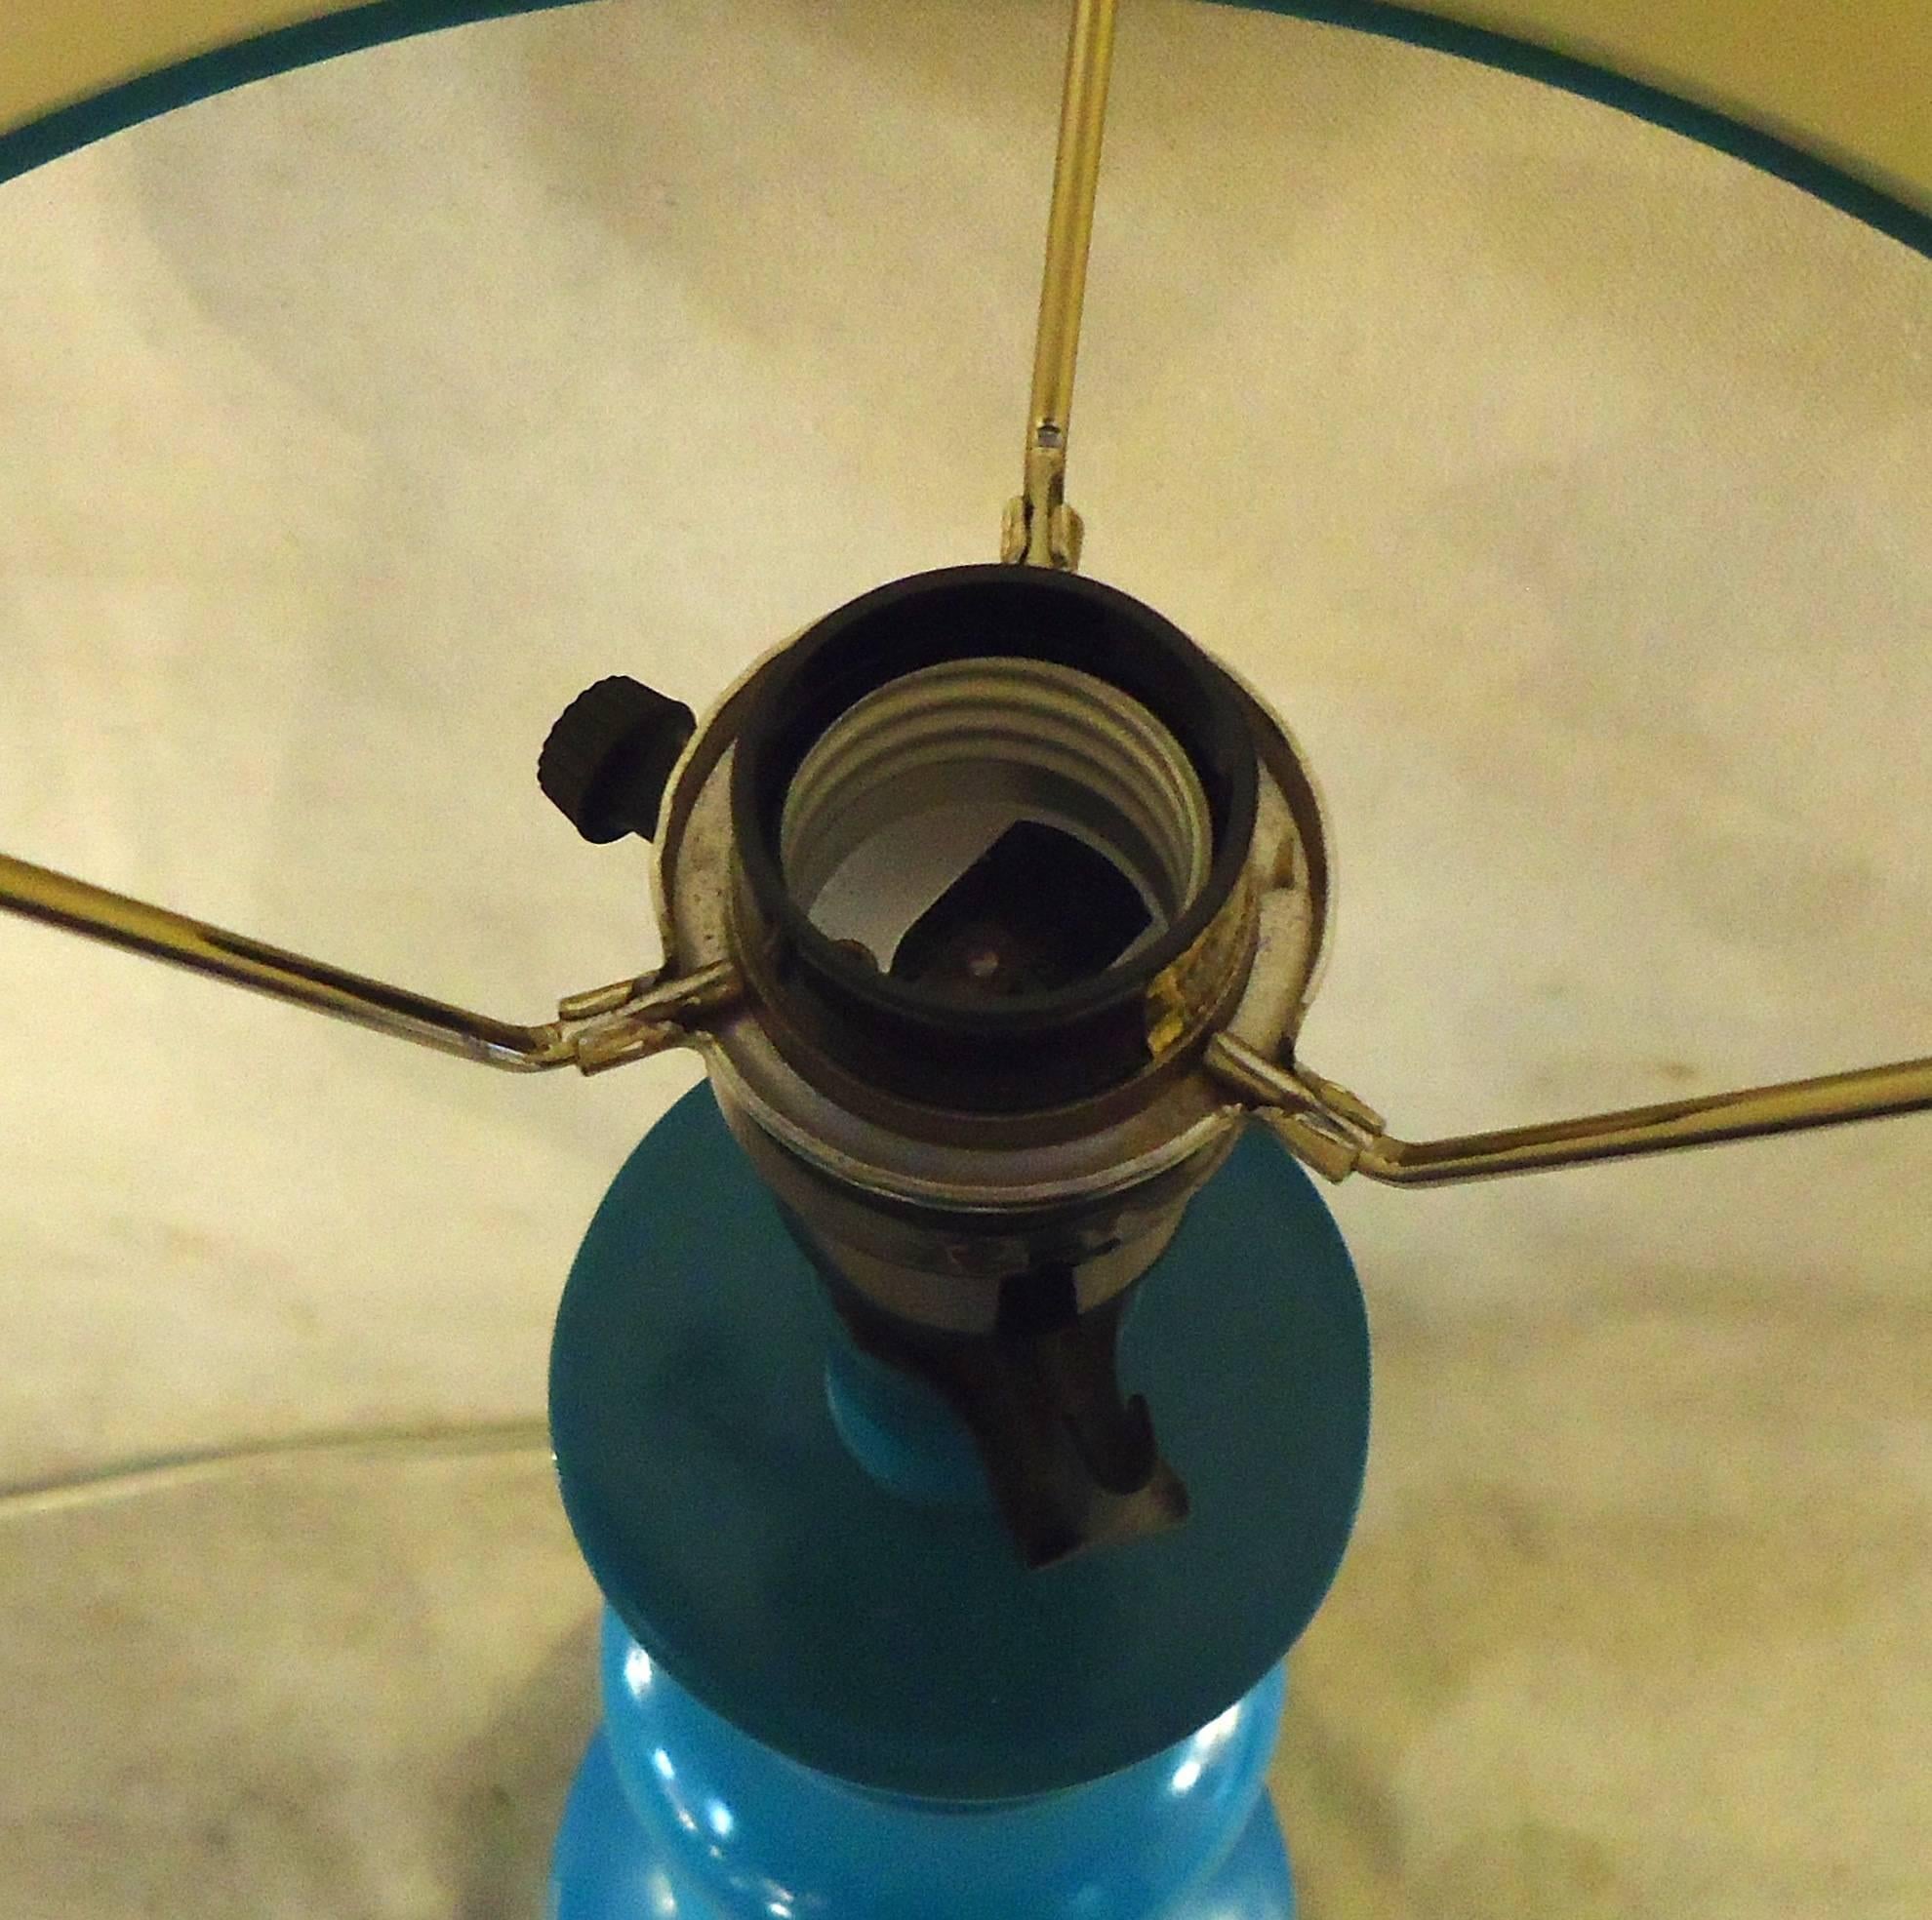 Kleine Tischlampe mit einzigartigem, geformtem Design und lustiger blauer Farbe. Inklusive passendem Lampenschirm.

(Bitte bestätigen Sie den Standort des Artikels, NY oder NJ, mit dem Händler).
 